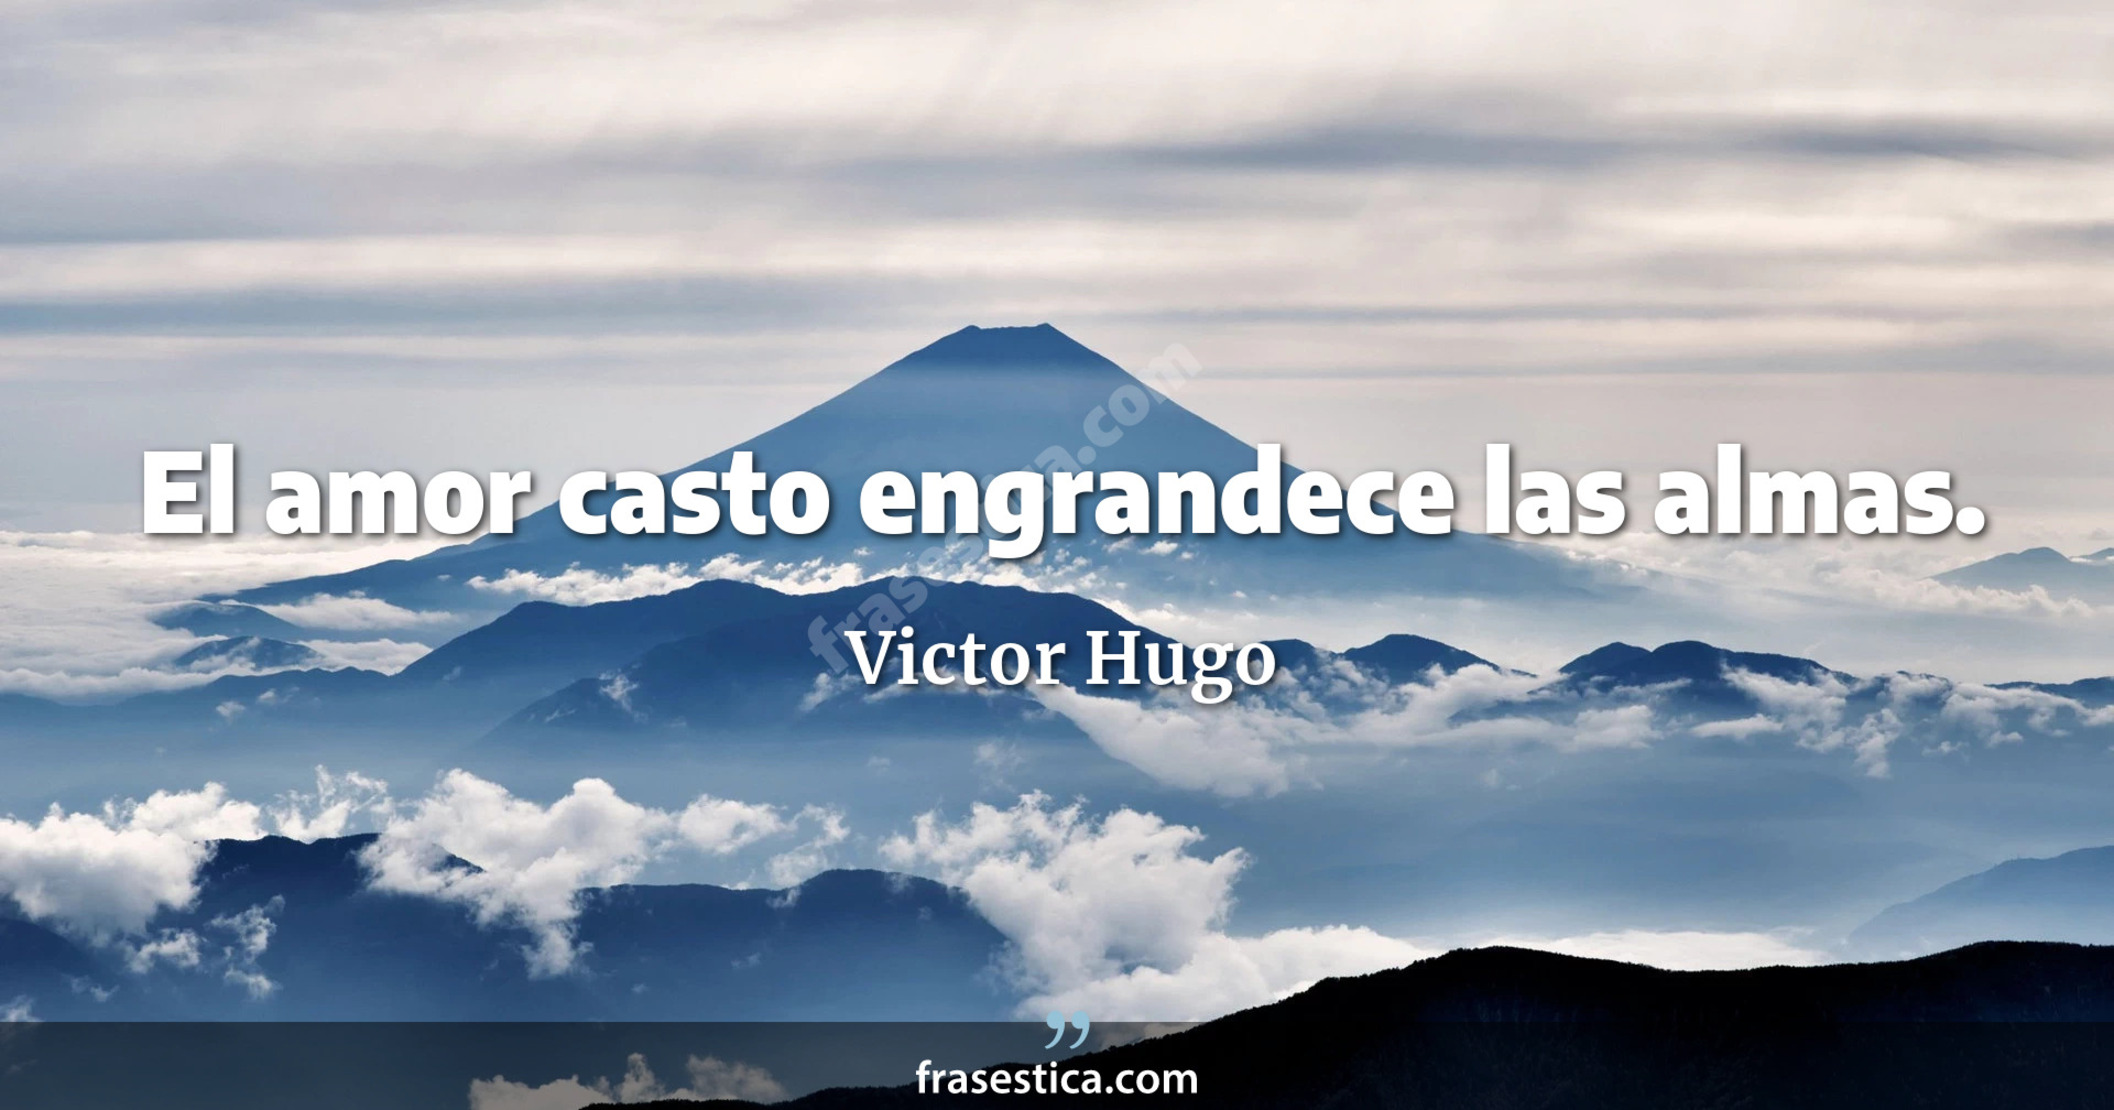 El amor casto engrandece las almas. - Victor Hugo